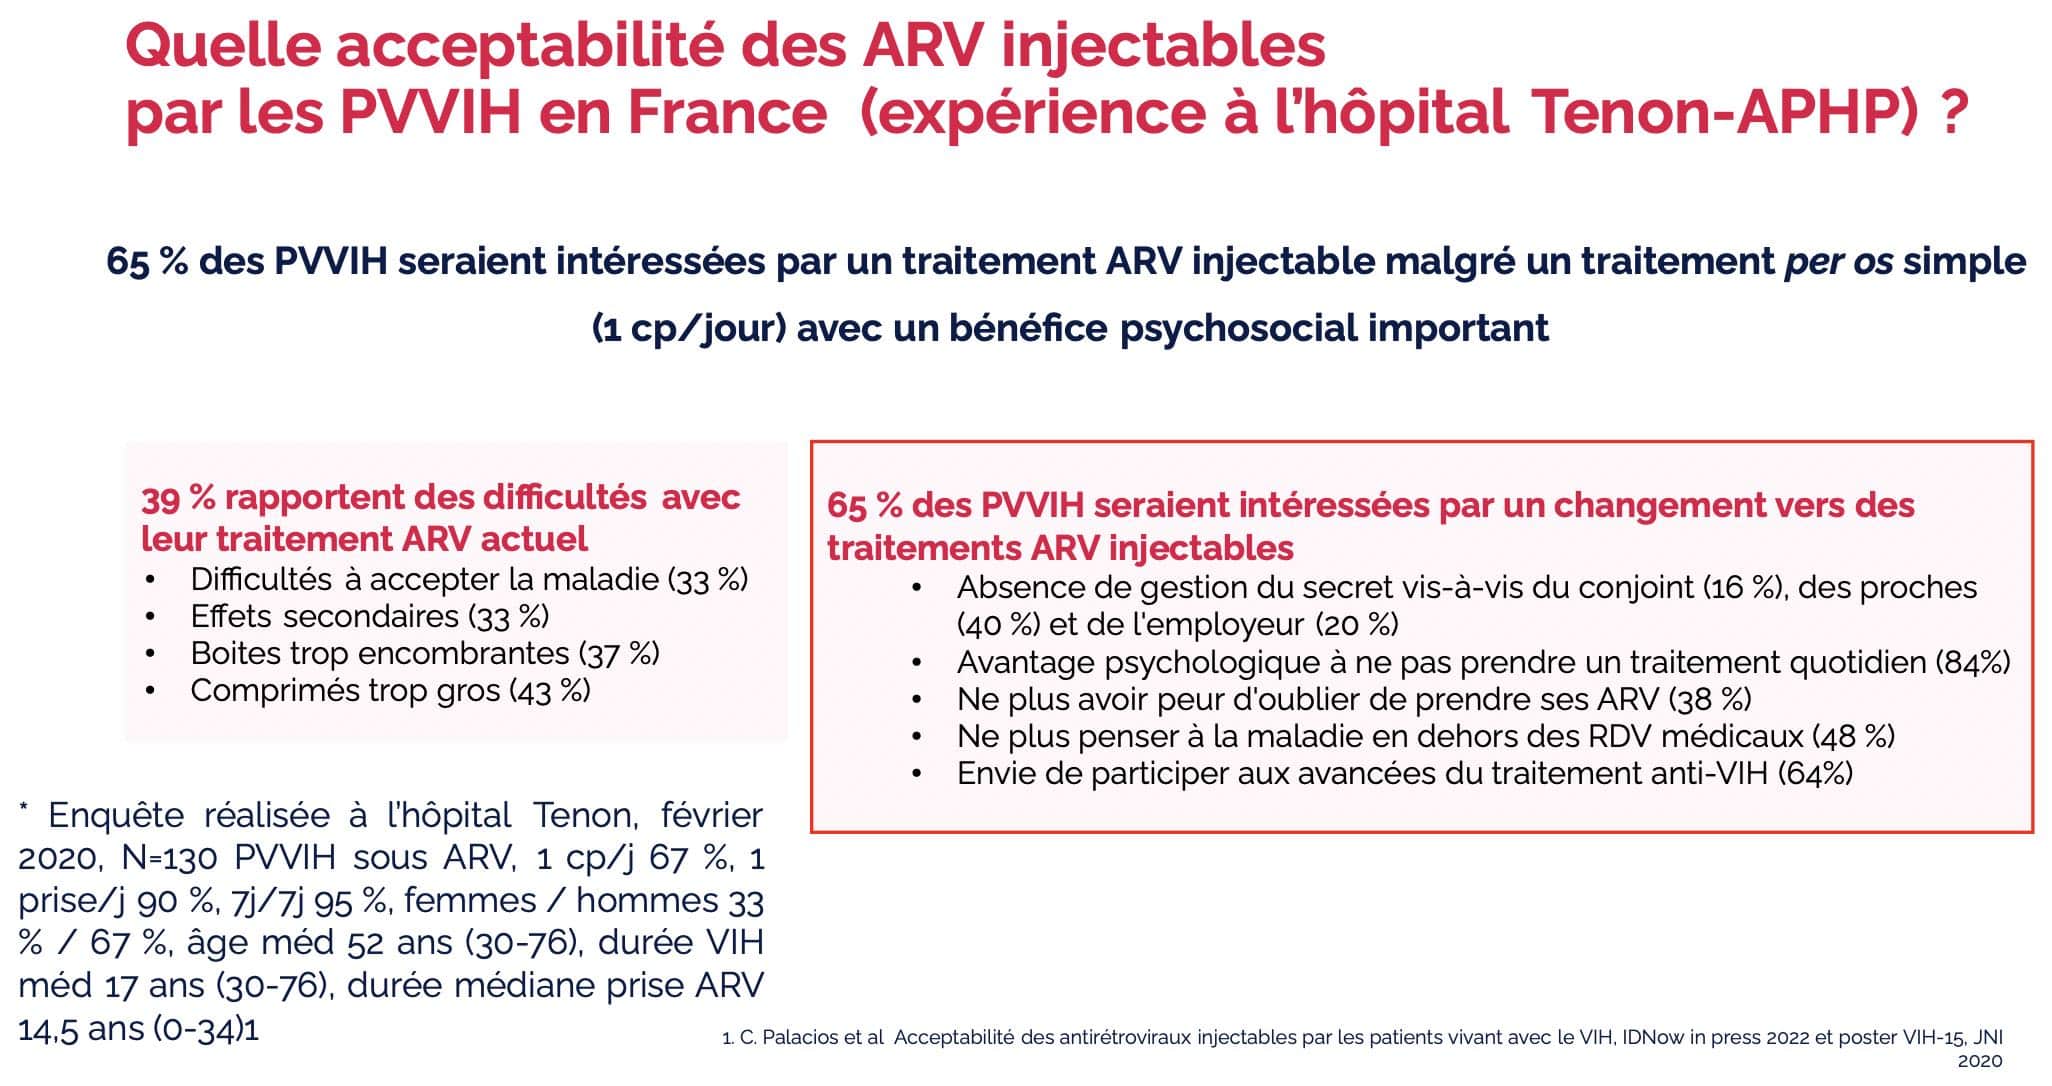 Quelle acceptabilité des ARV injectables par les PVVIH en France (expérience à l'hôpital Tenon)